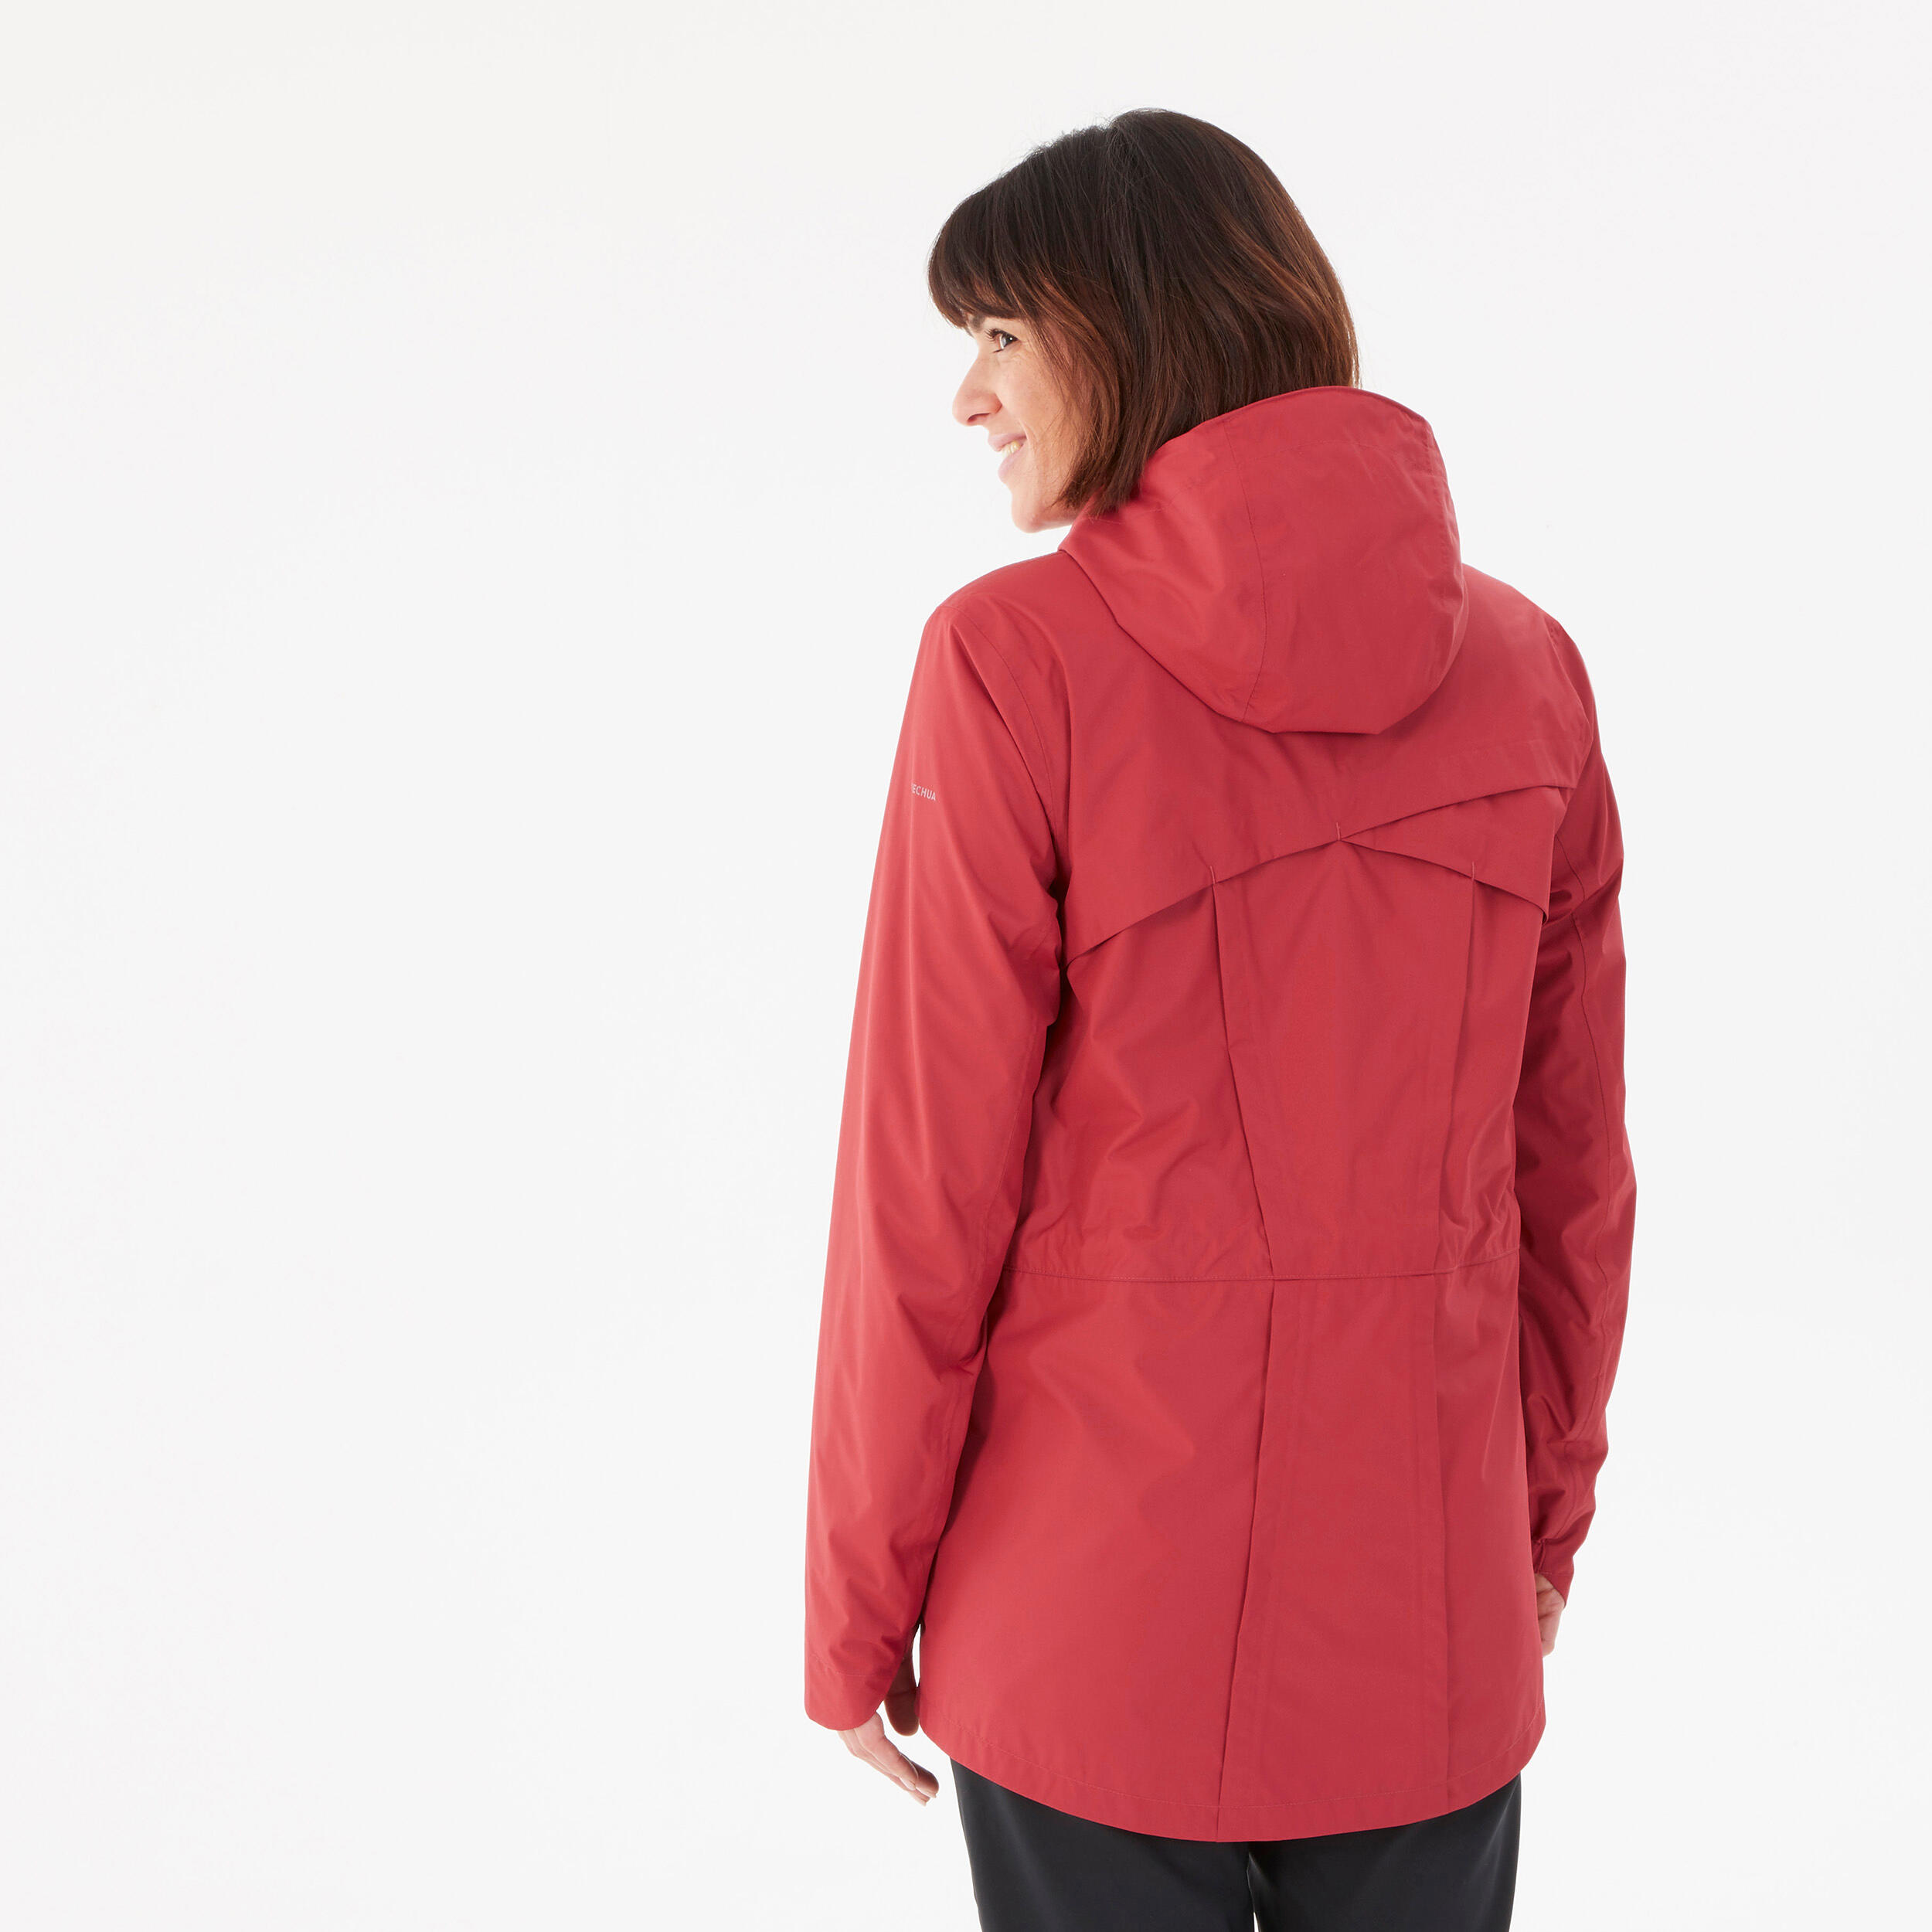 Hiking Raincoat - NH500 Waterproof Jacket - Women - Ruby Red 4/9